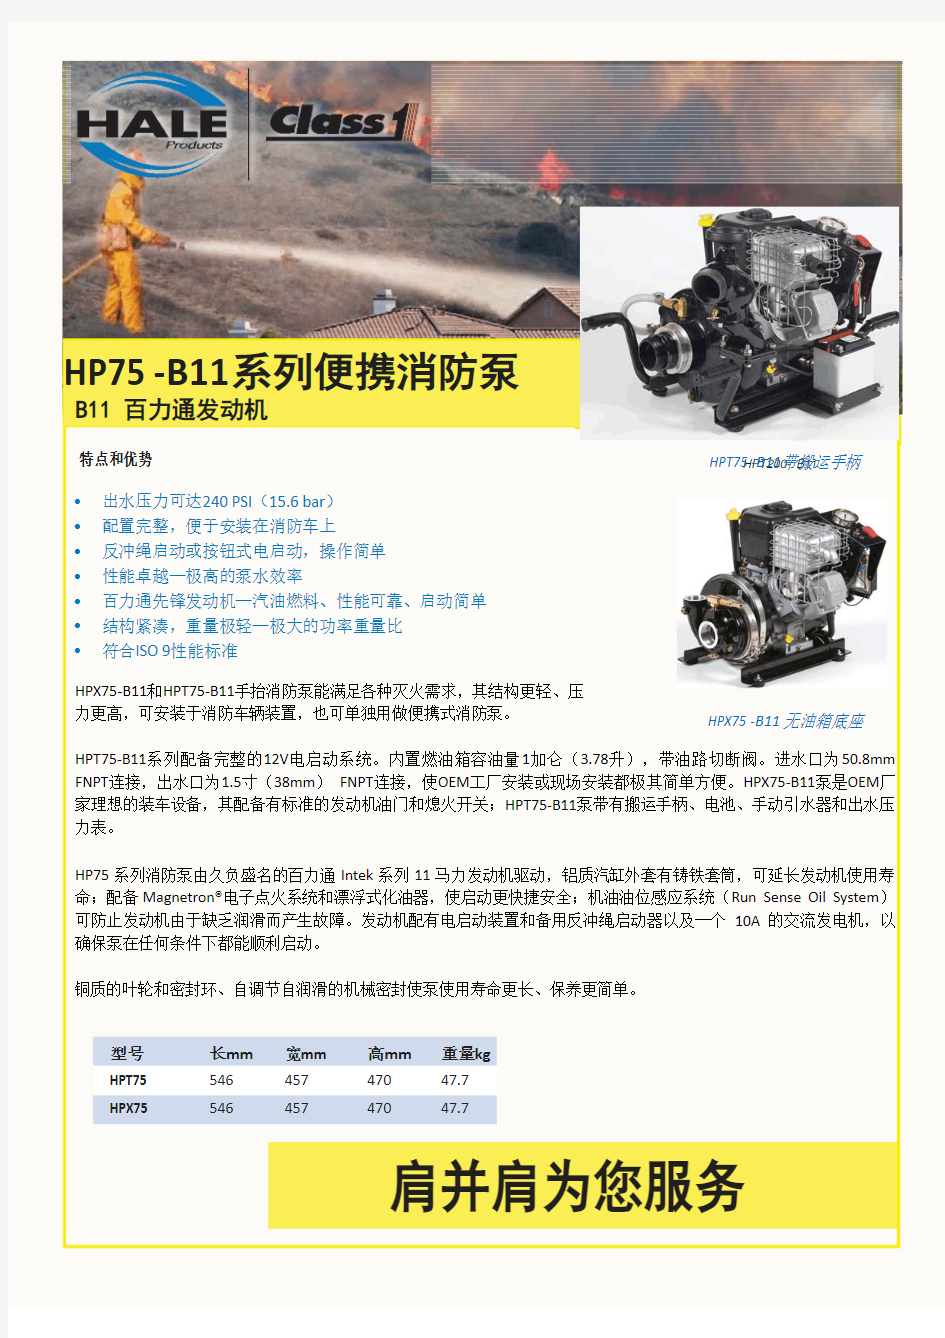 HPT75-B11 Chinese11